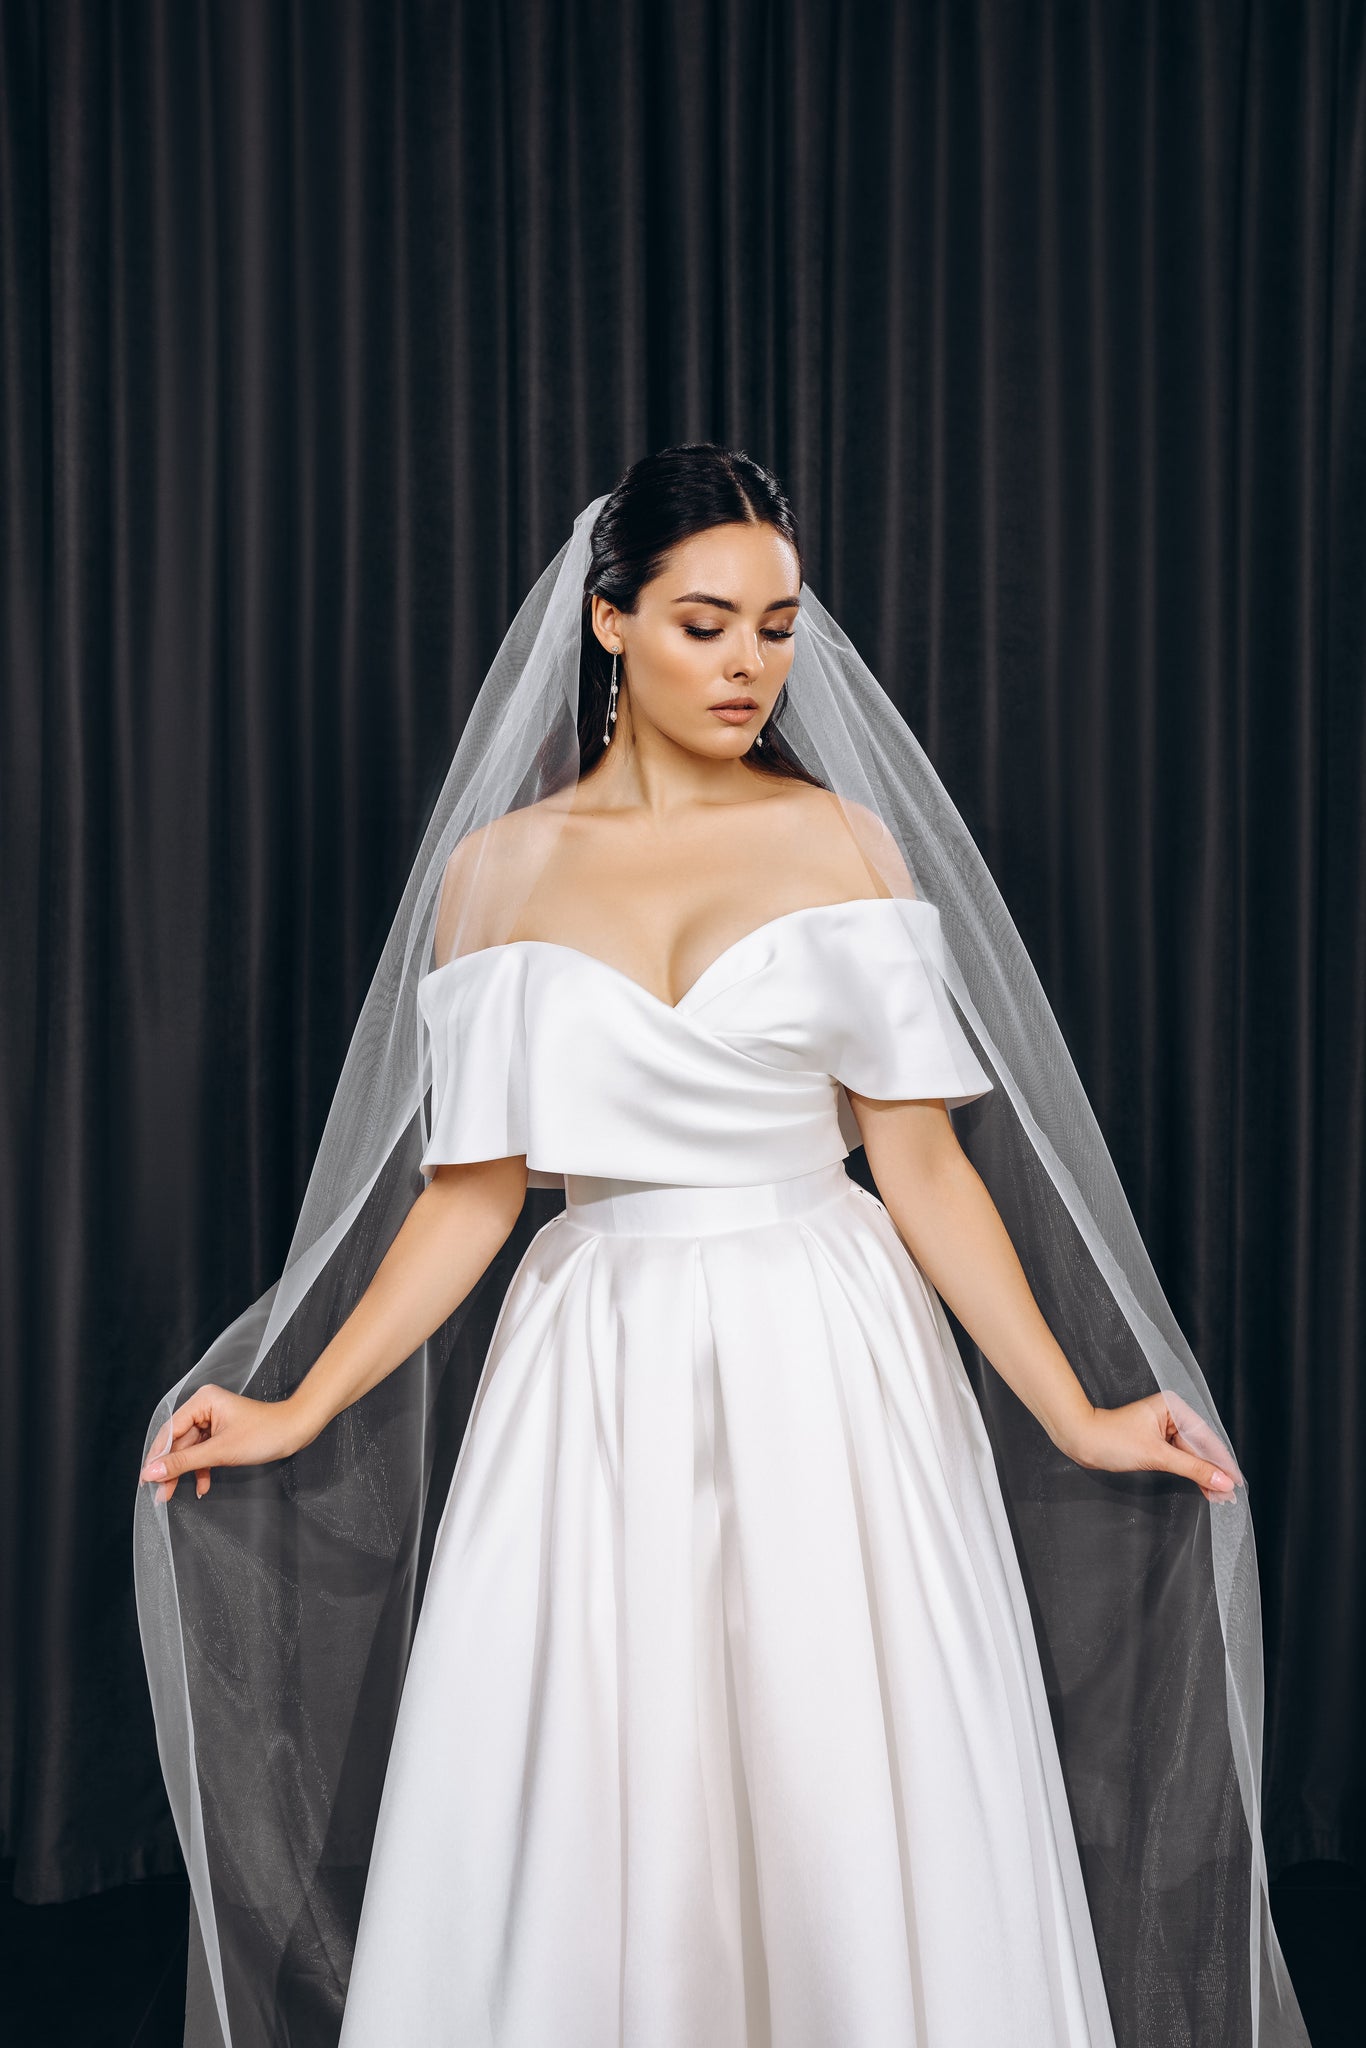 Cut edge bridal veil